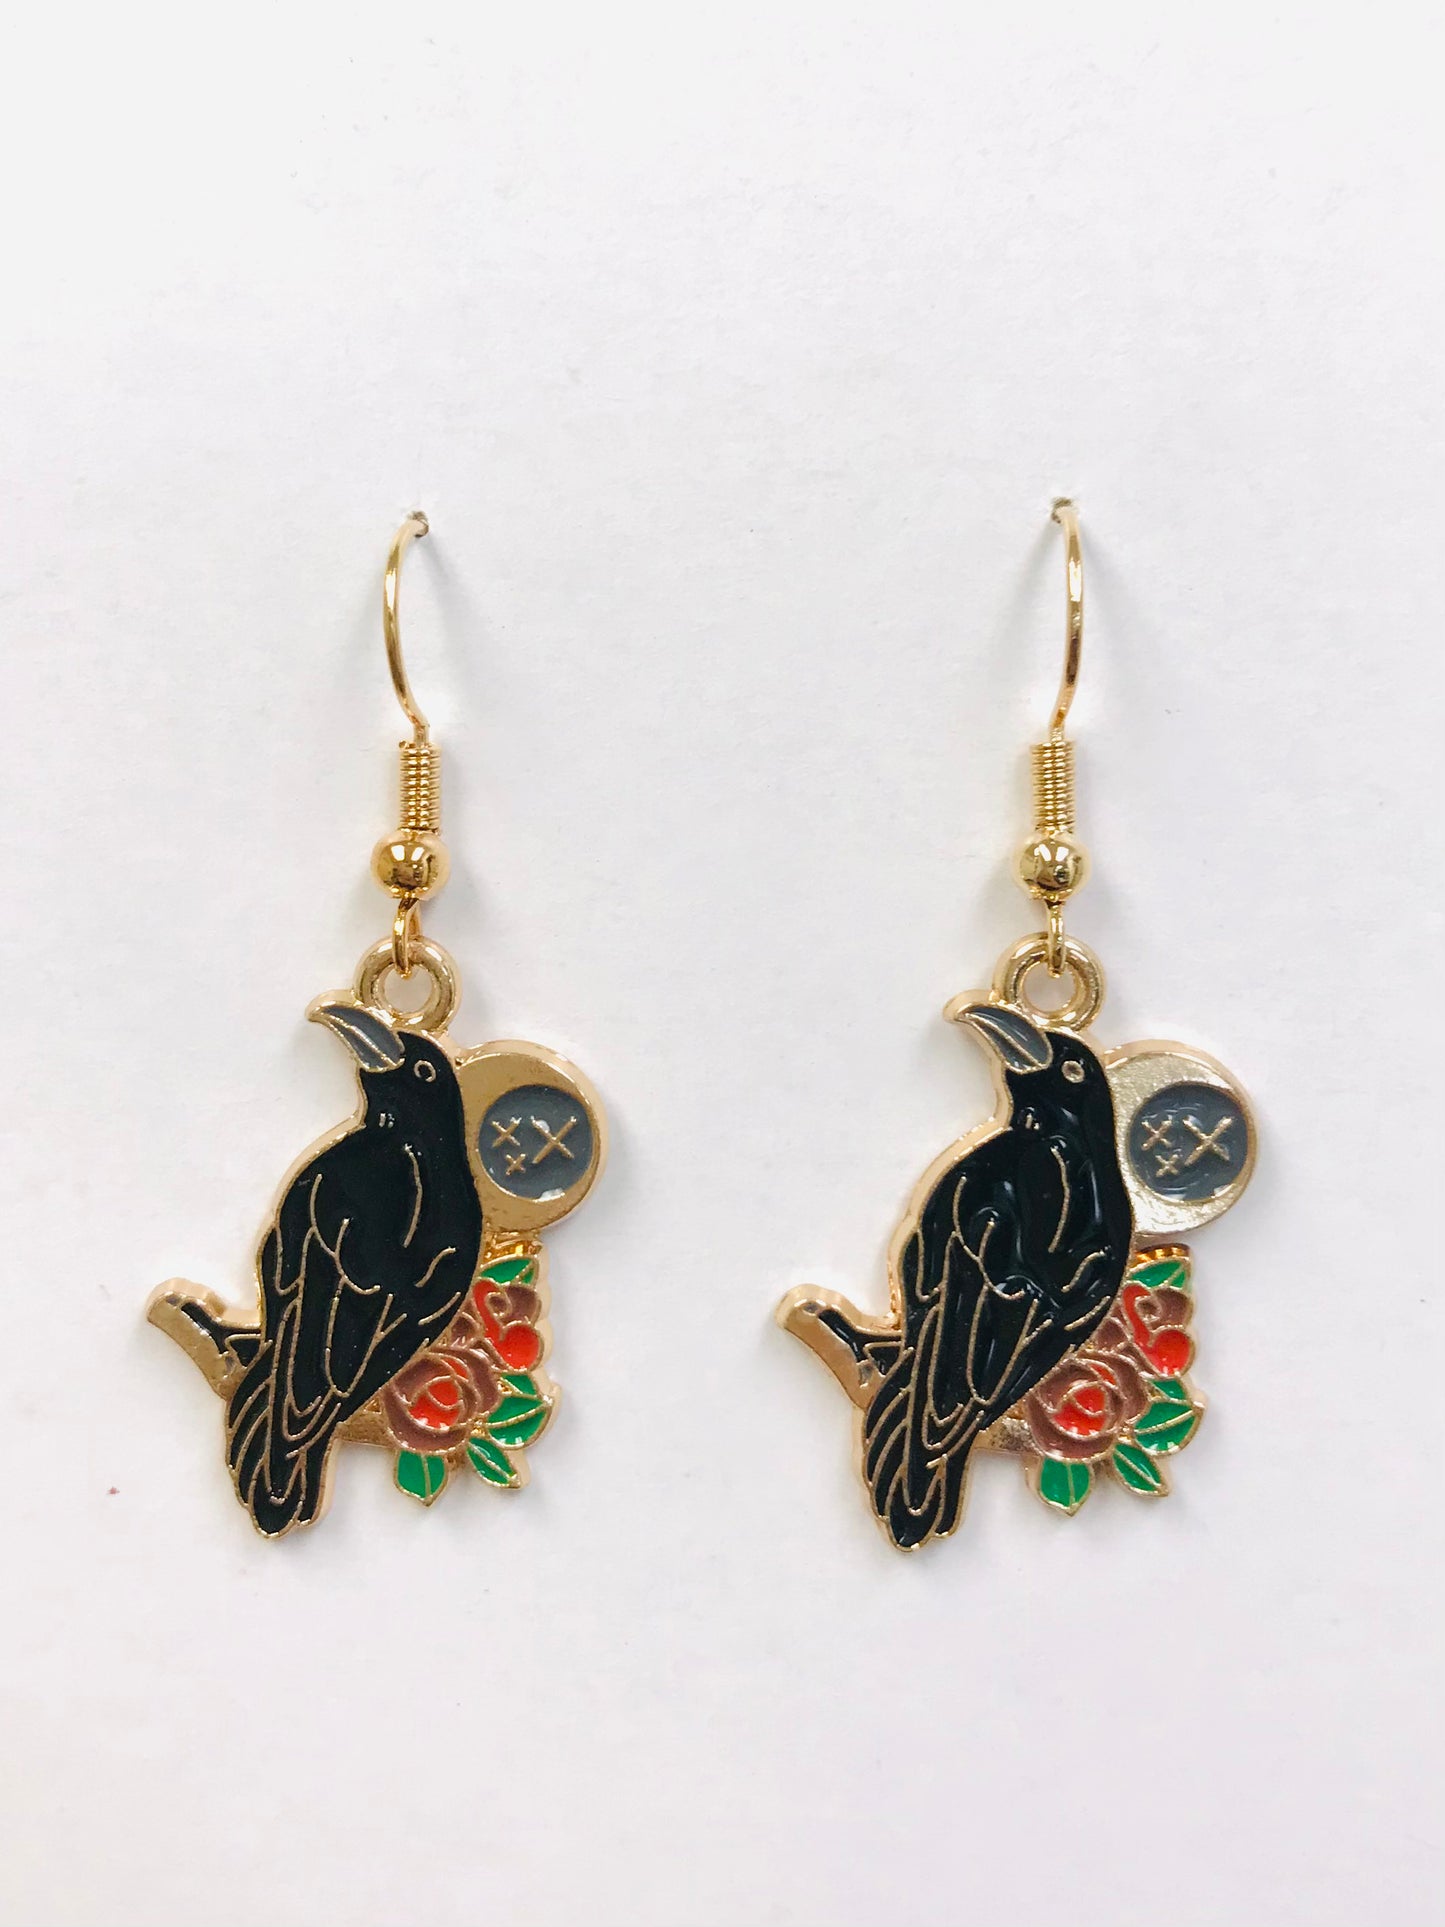 Cosmic Crow Earrings Lunar Raven Jewelry